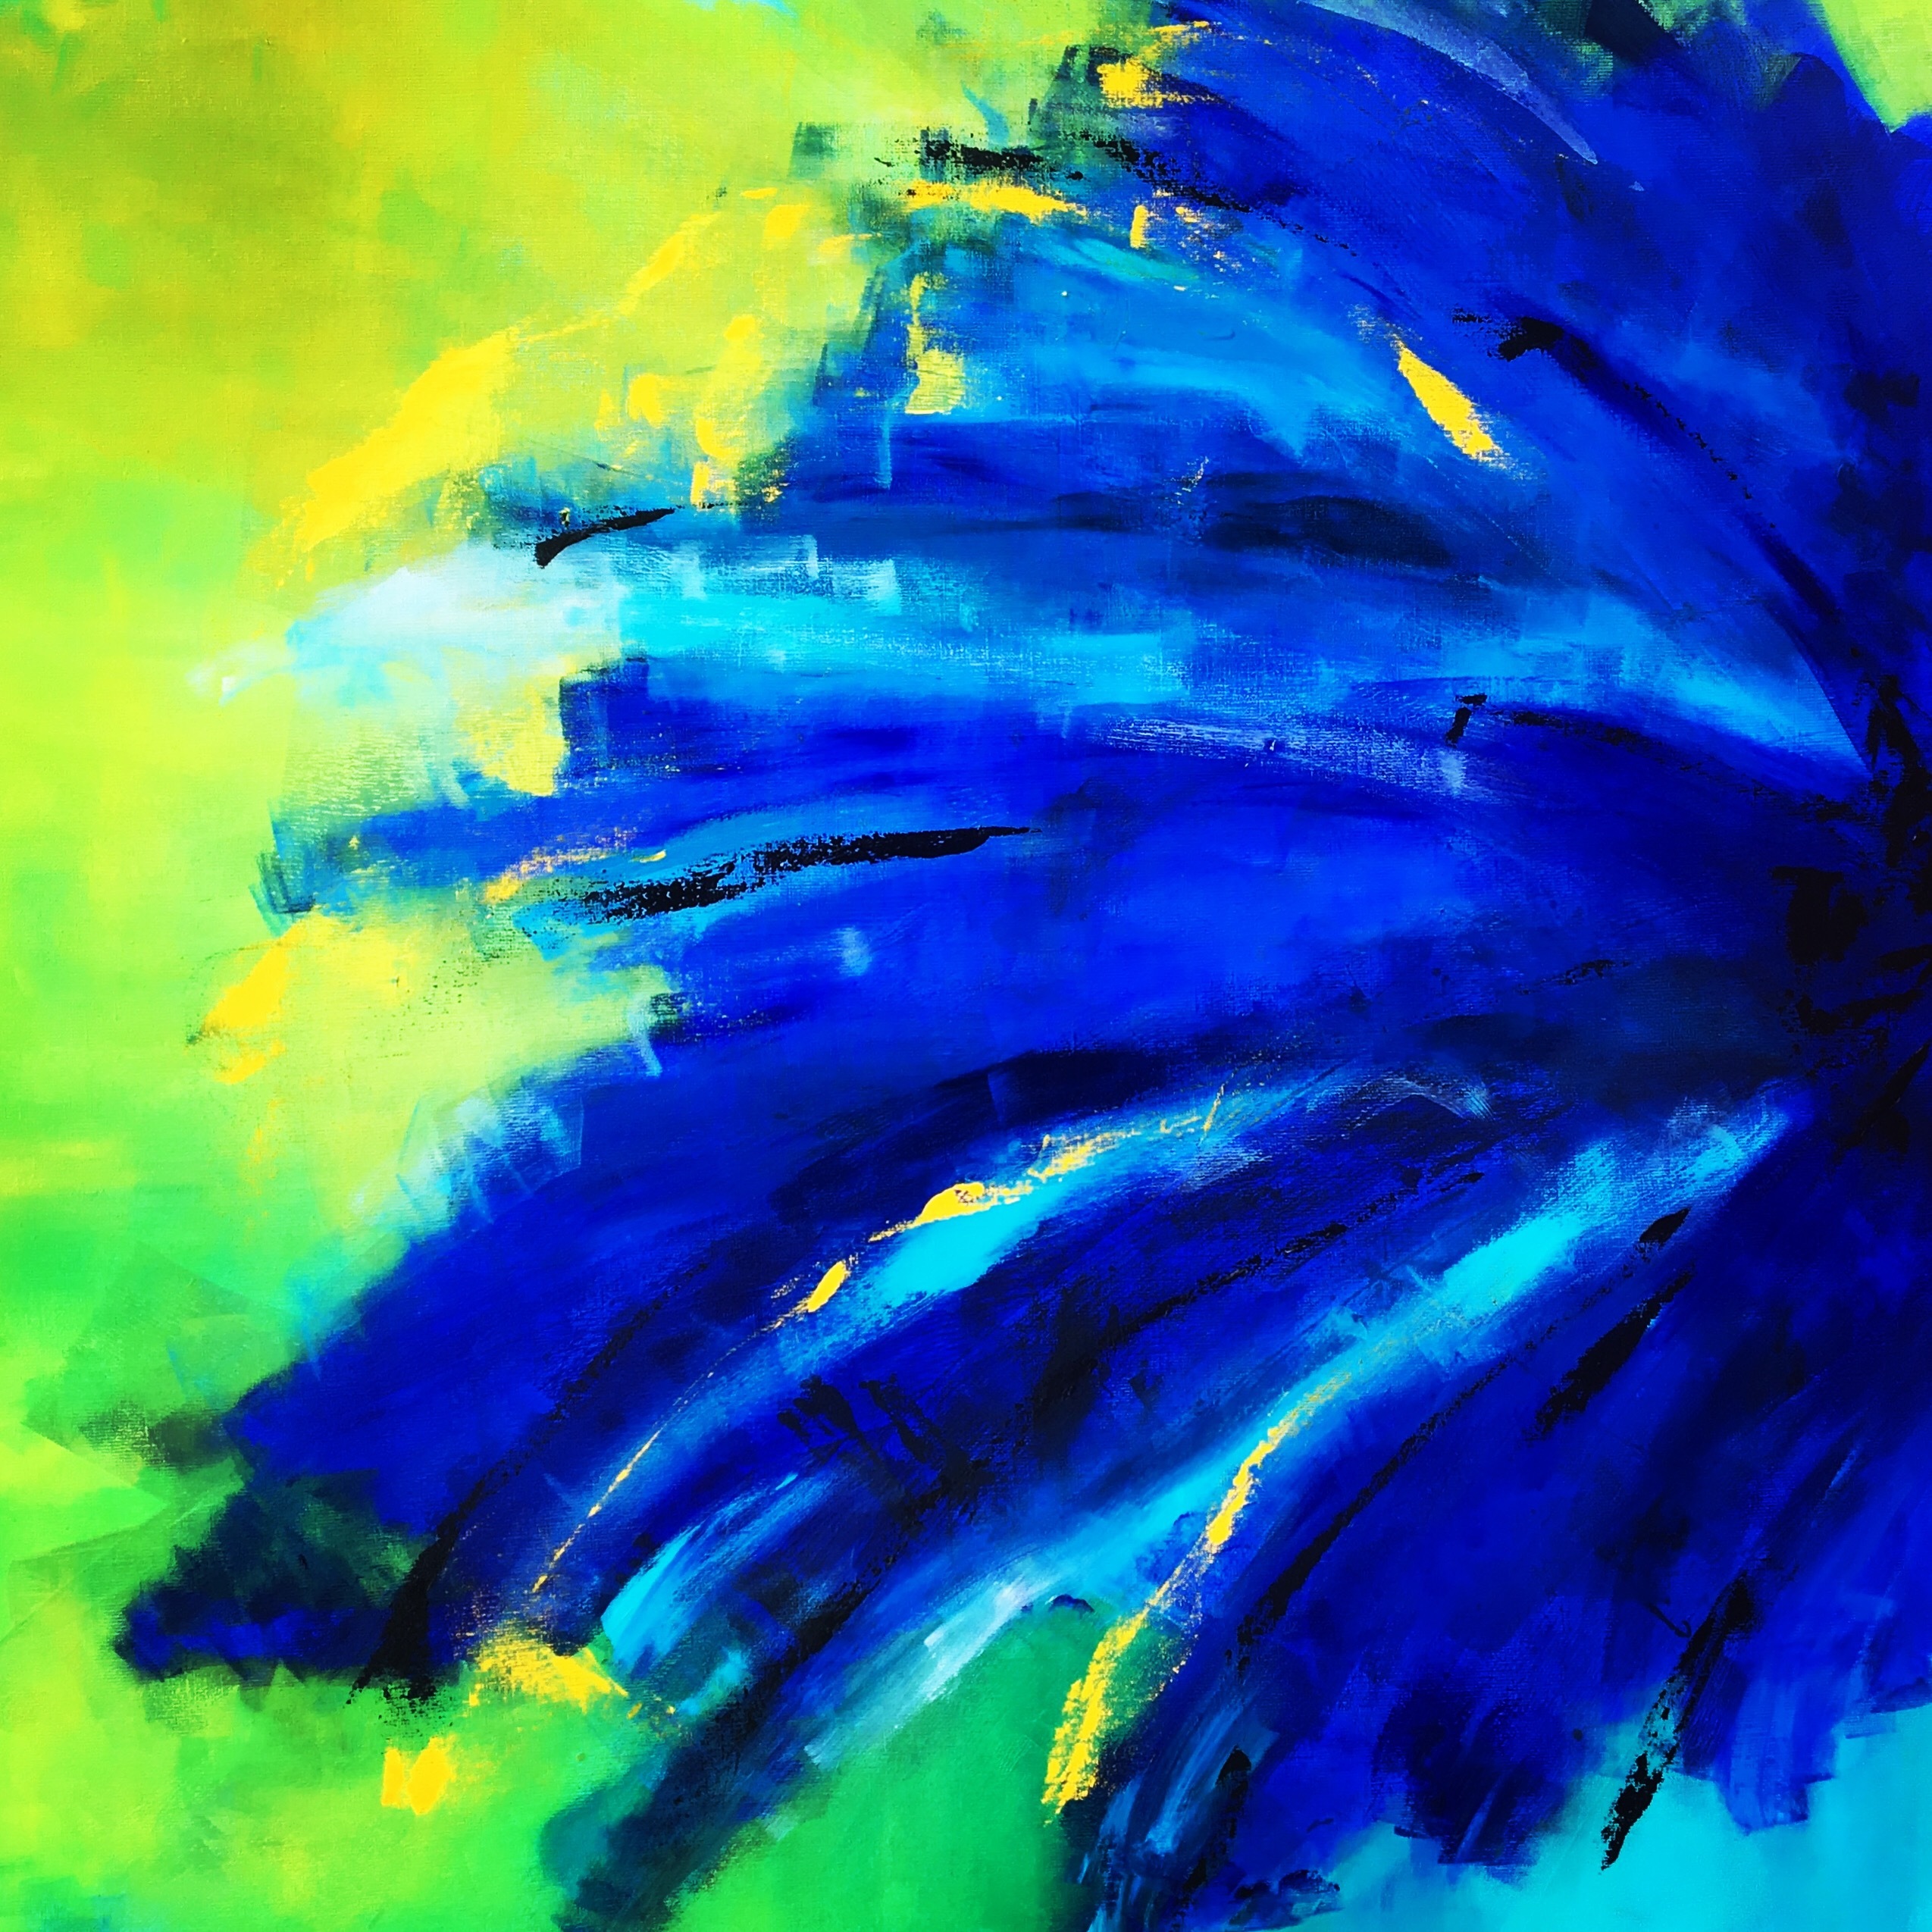 Ser vi en hale af en påfugl eller en del af en blomst i dette farverige abstrakte maleri?